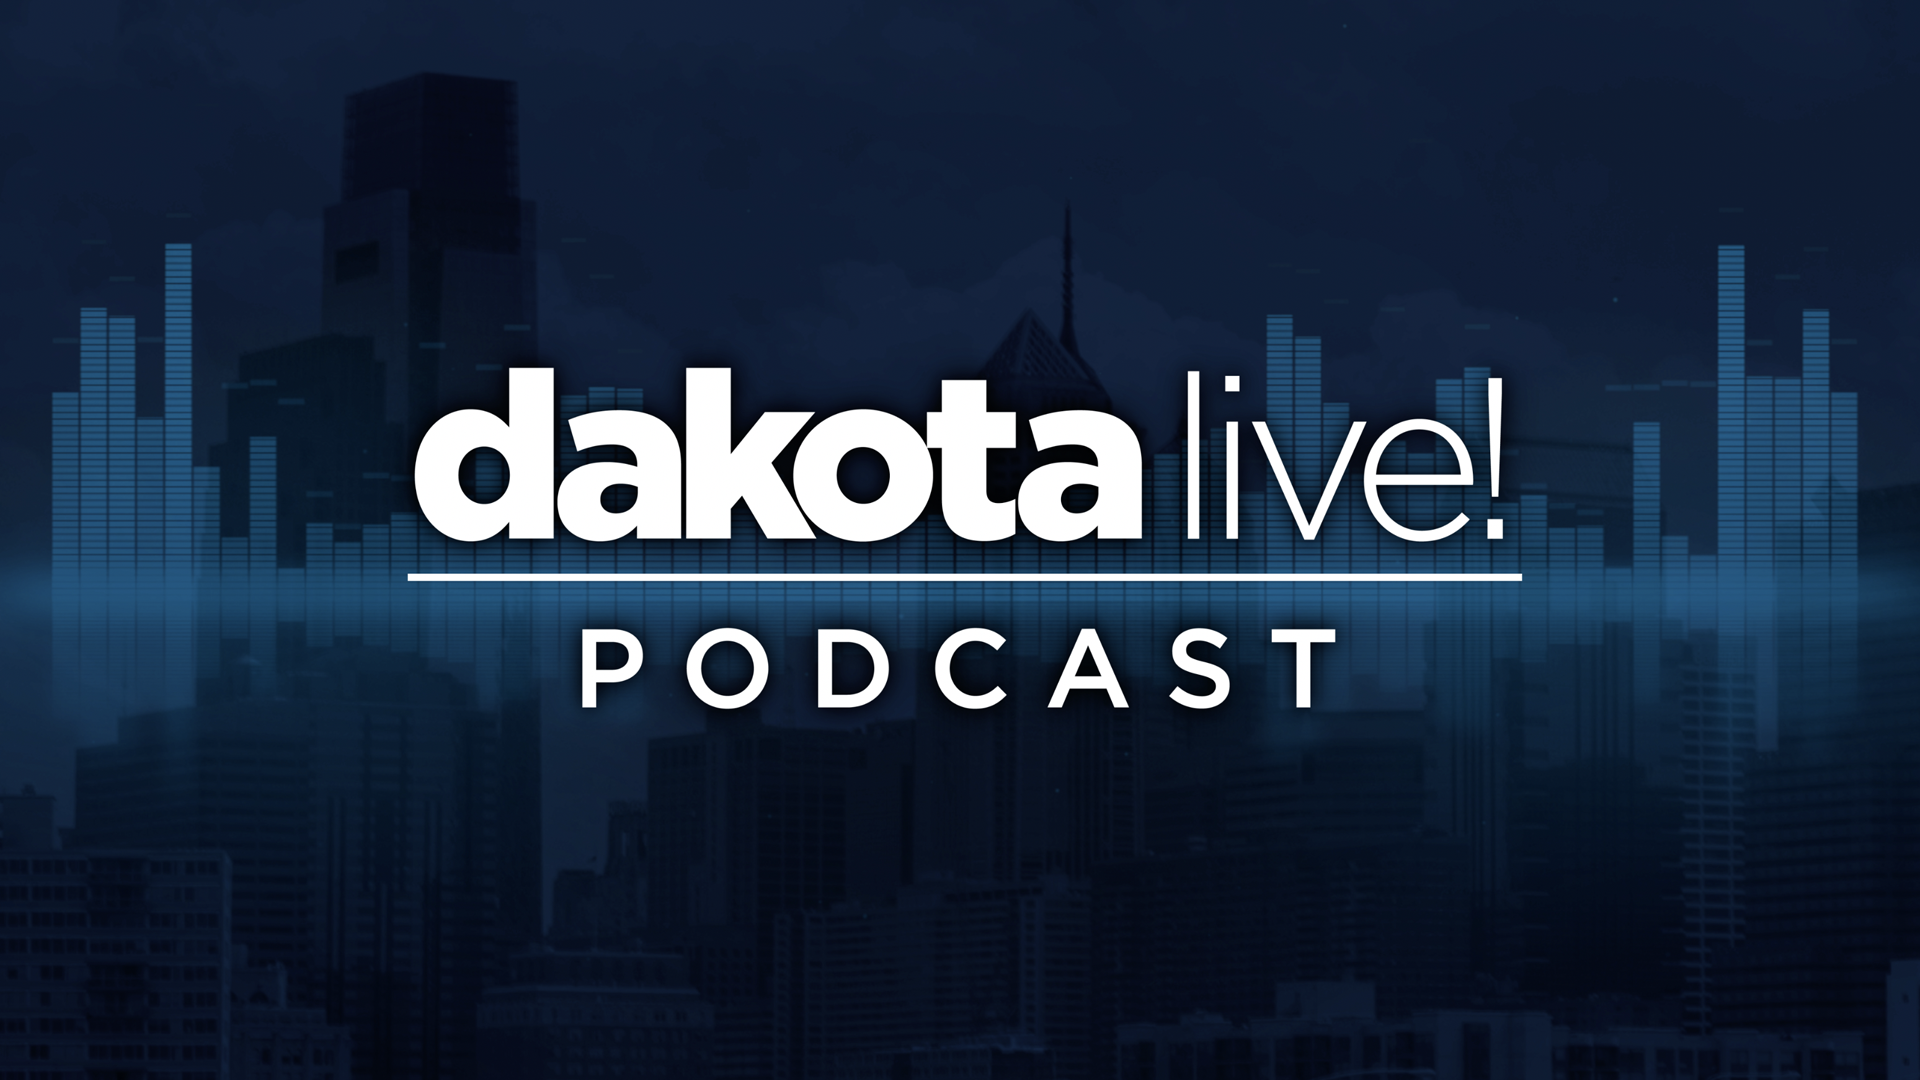 MO_dakota_live_podcast_000000